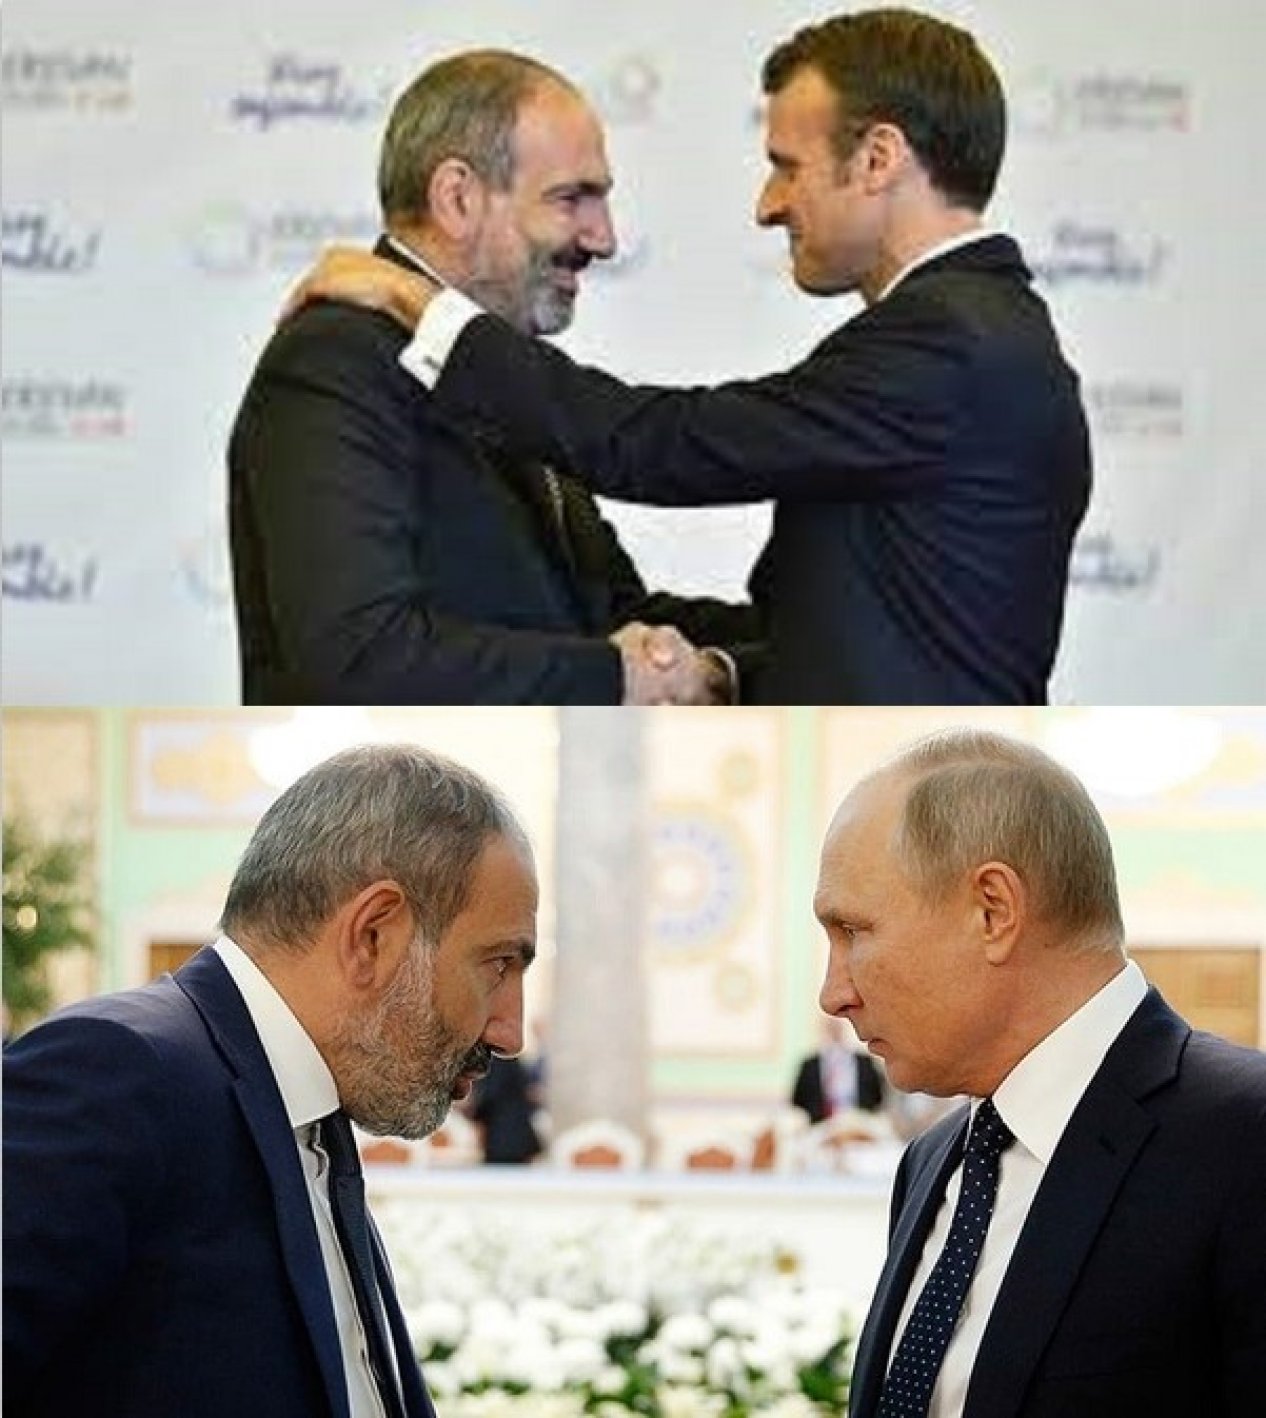 Uzmanlar Ermenistan Başbakanı’nın Fransa’ya gerçekleştirmiş olduğu ziyareti Rusya’ya ihanet olarak algılıyor